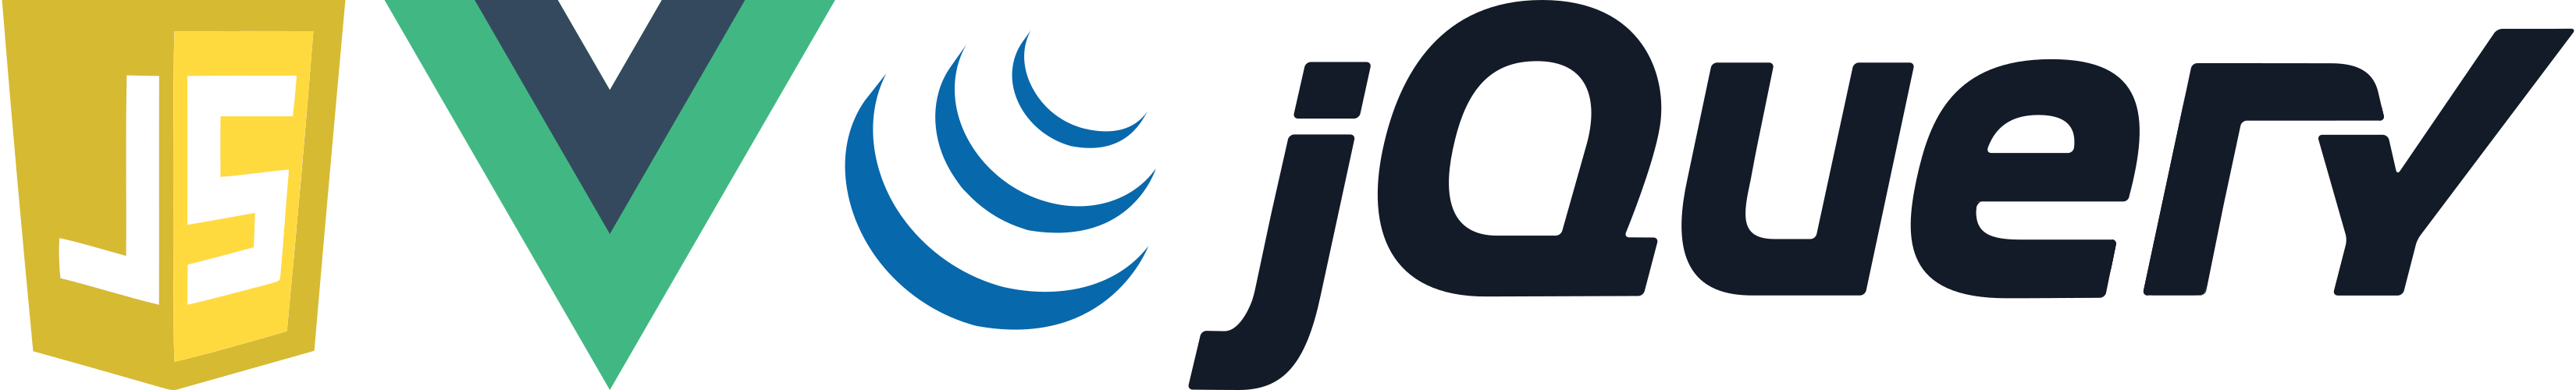 Logos: Javascript, Vue.js & jQuery